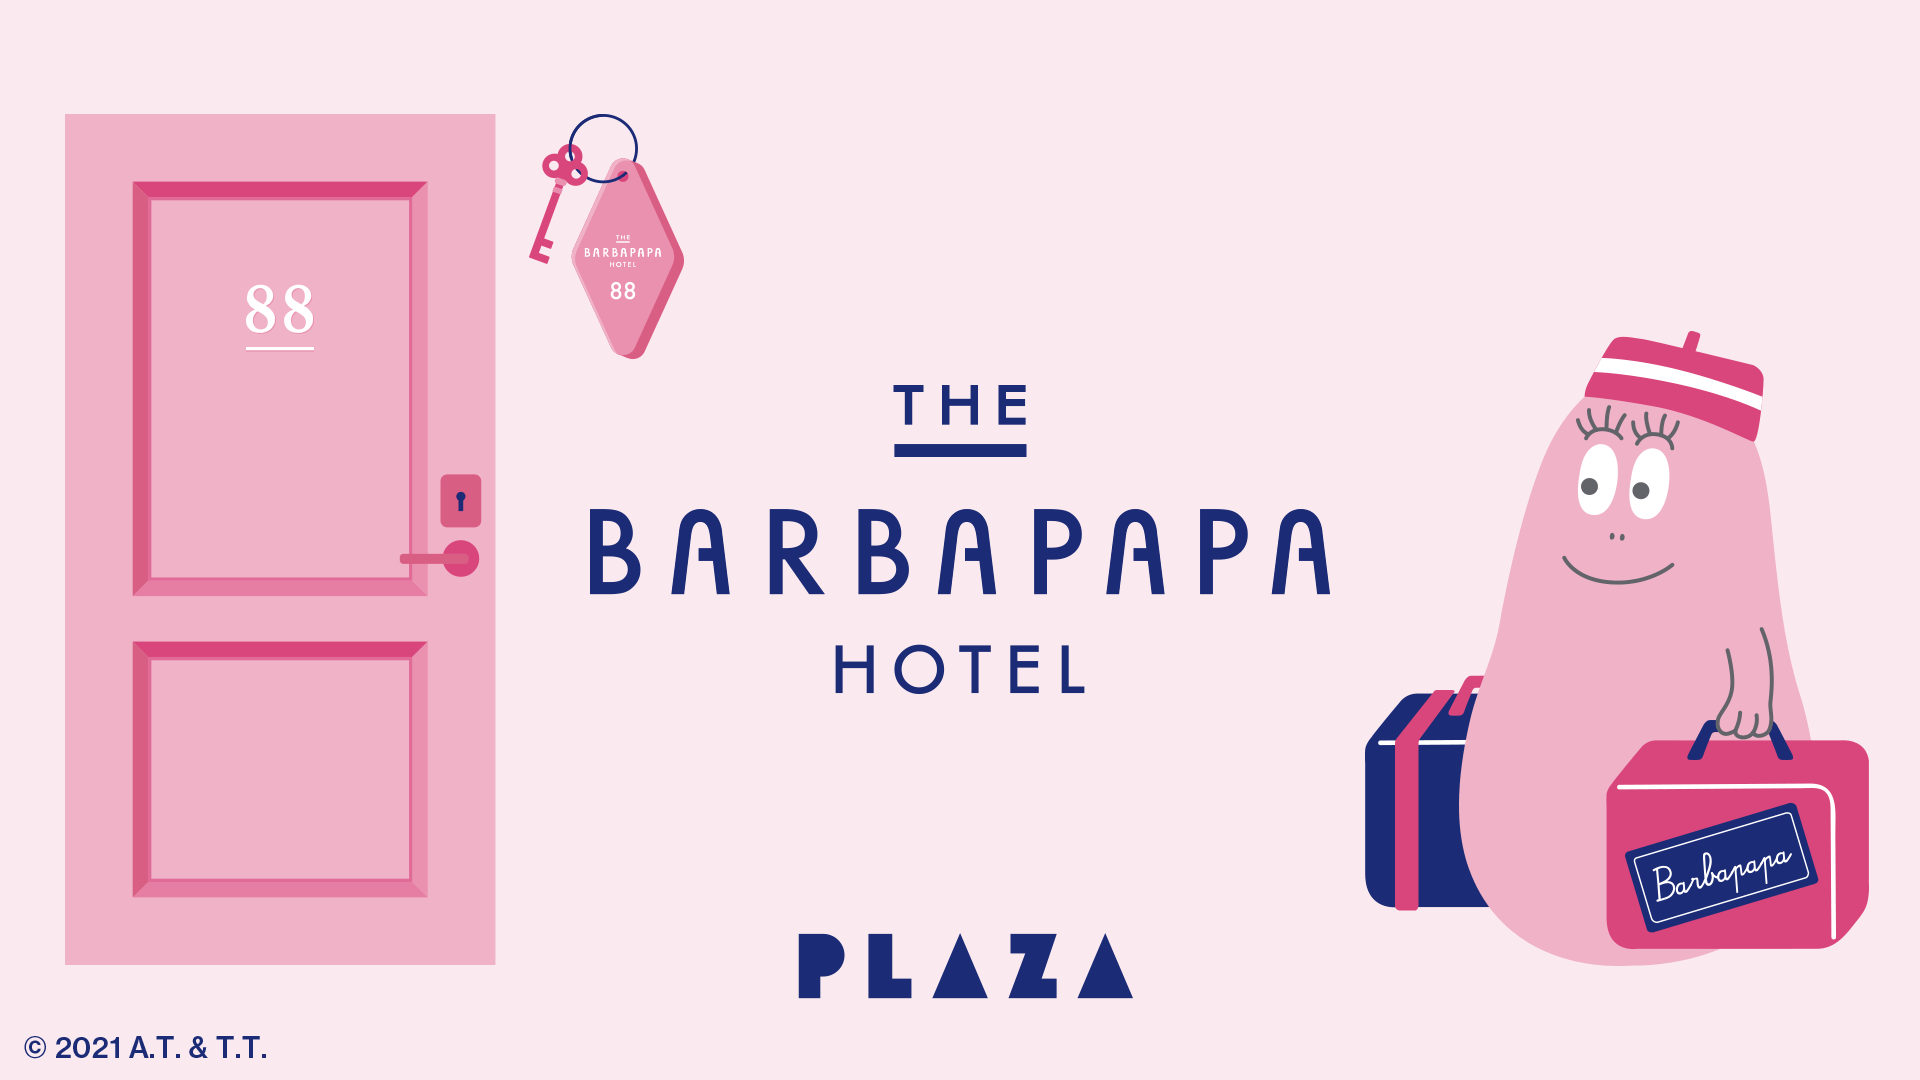 THE BARBAPAPA HOTEL